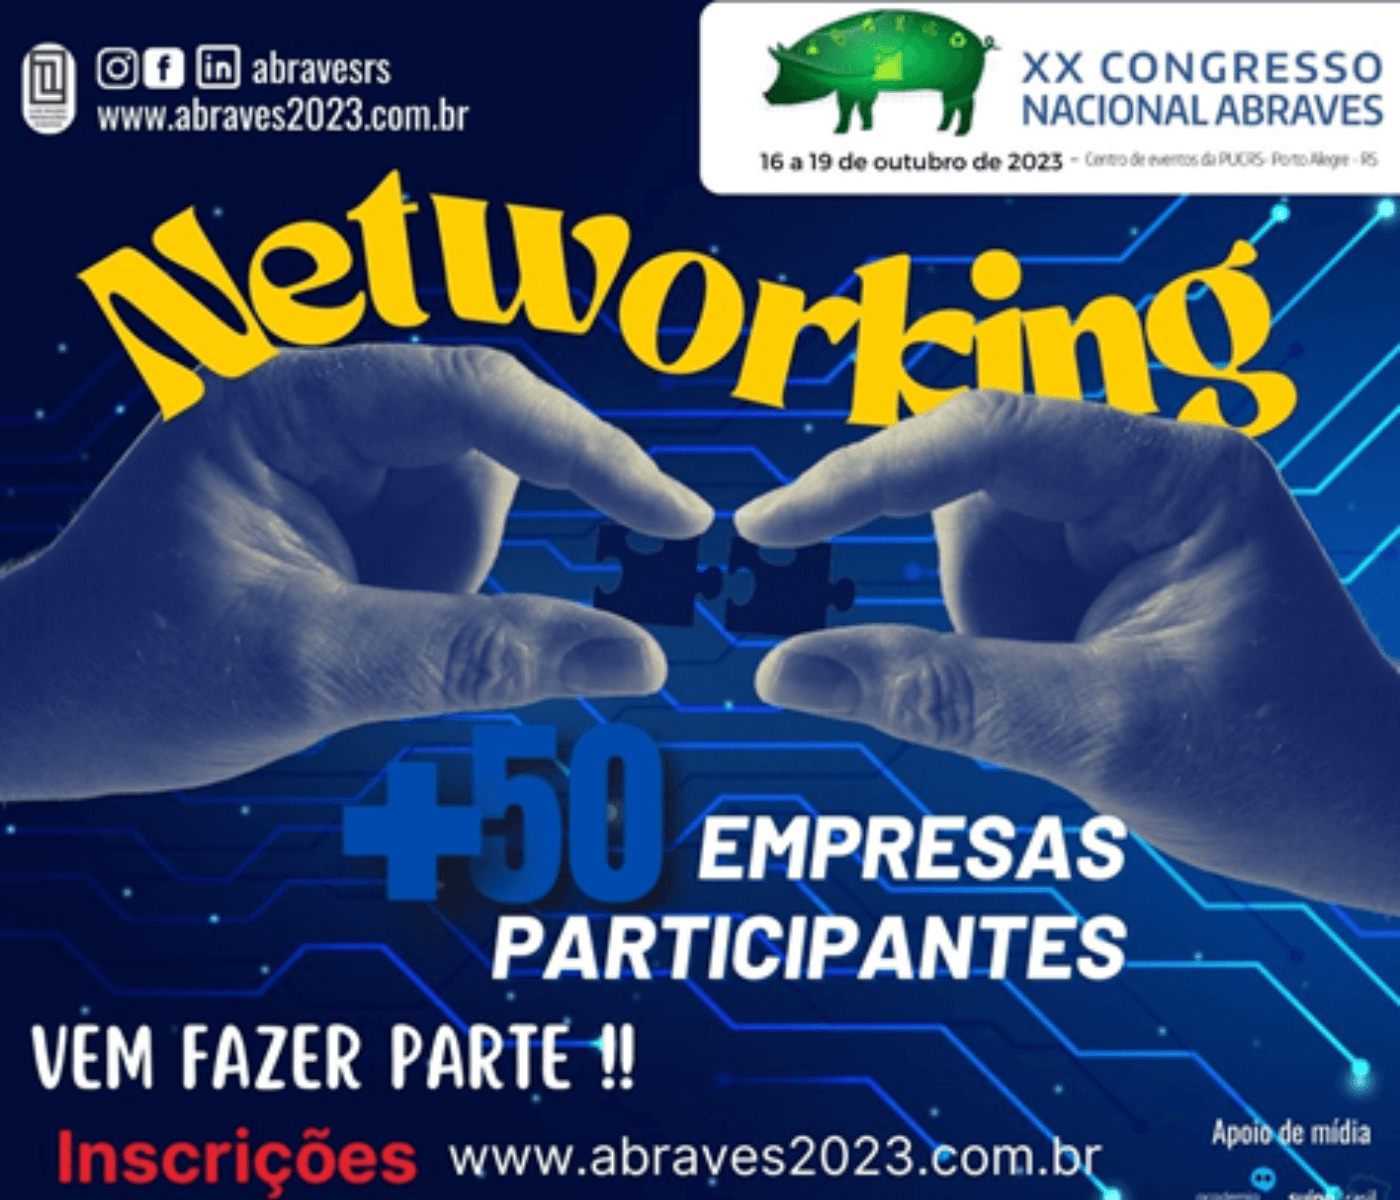 XX CONGRESSO NACIONAL DA ABRAVES EM 2023 – Produzindo suínos para um futuro sustentável!